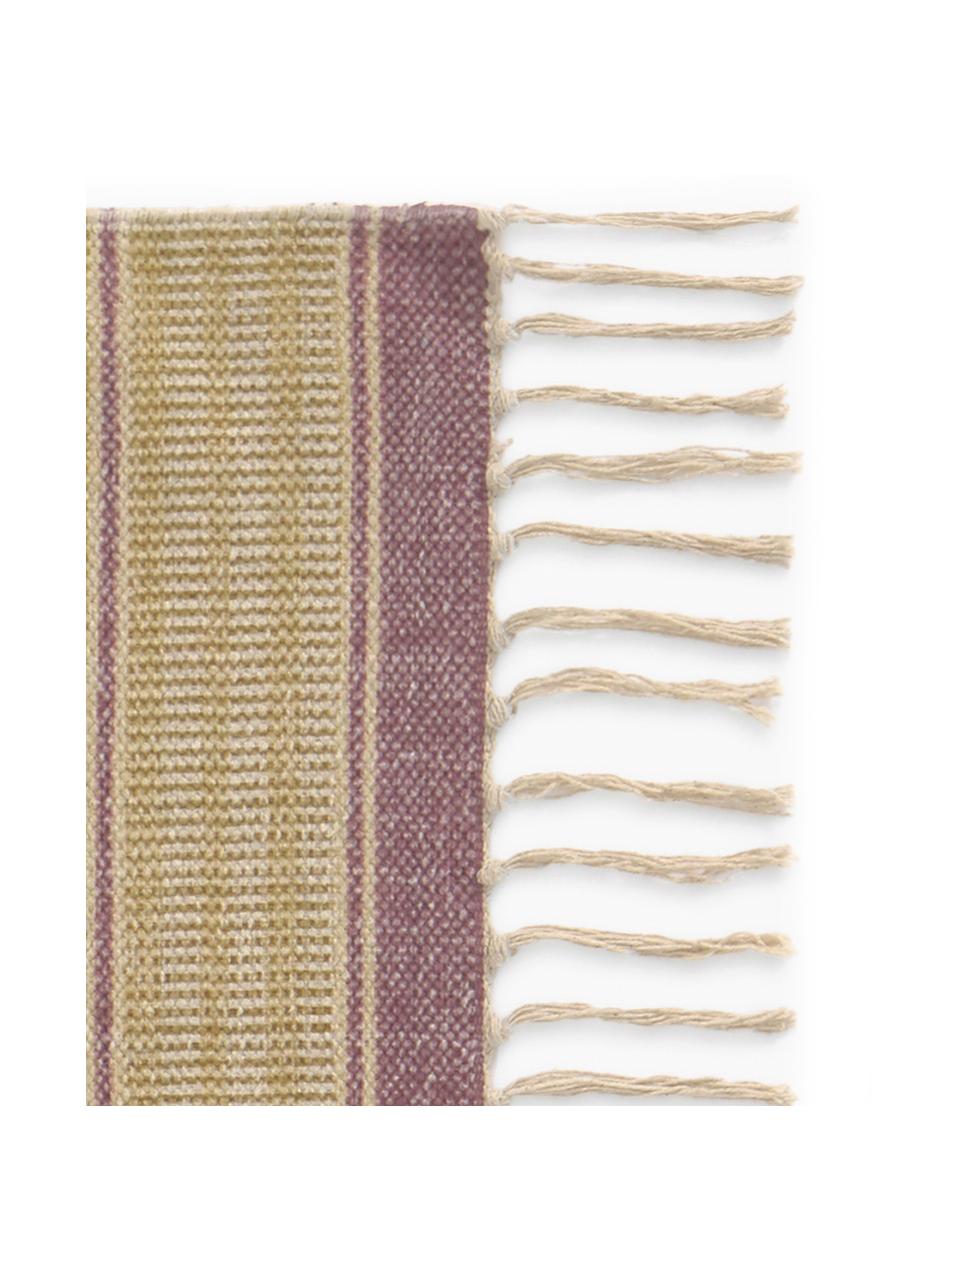 Teppich Kamel im Ethno Style, 100% Baumwolle, Senfgelb, Beige, Lila, Blau, B 150 x L 200 cm (Grösse S)